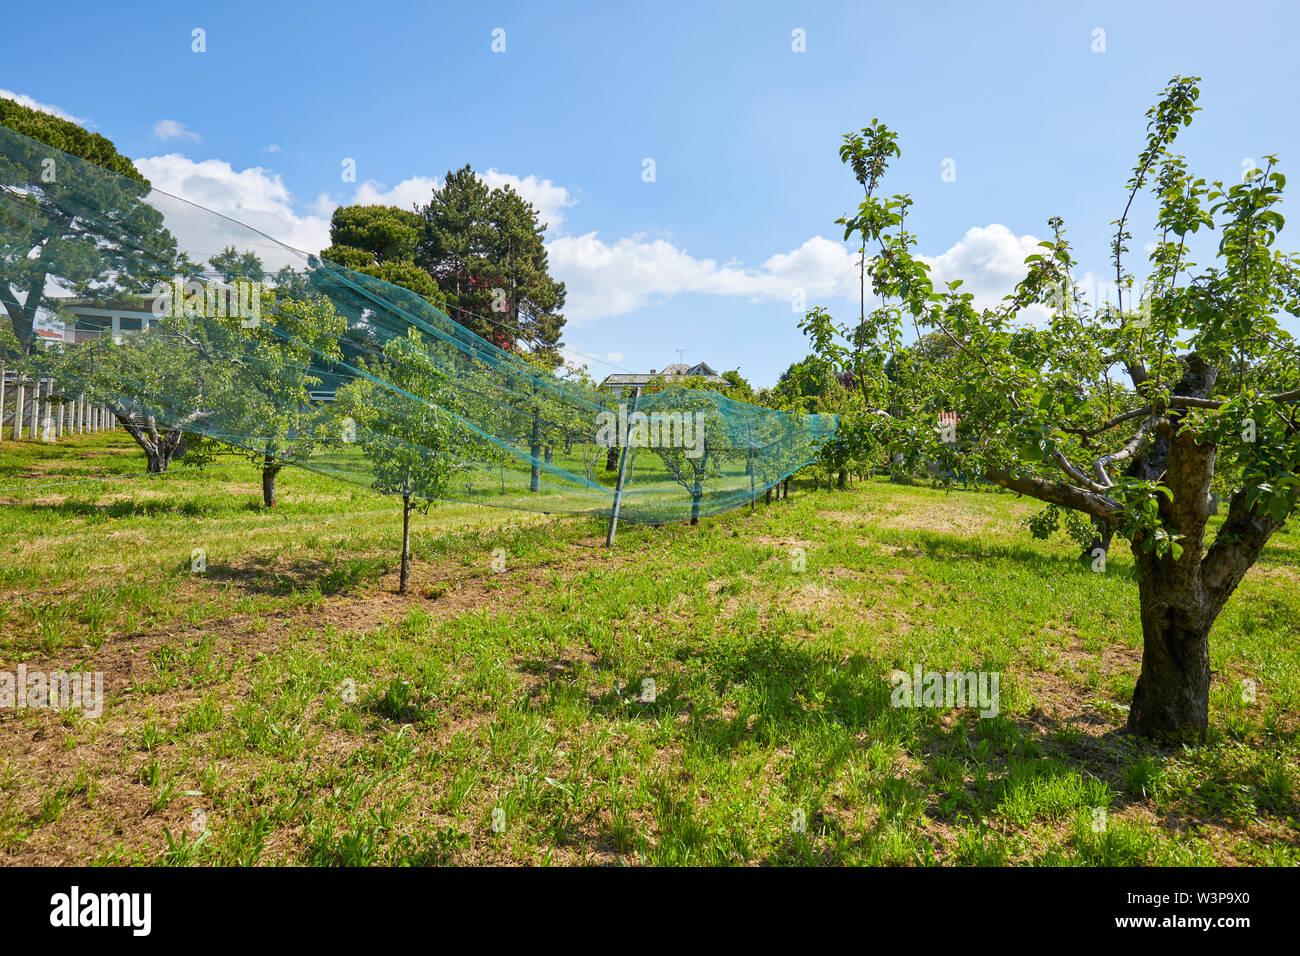 Obstgarten mit Bäumen und grünen Wiese an einem sonnigen Sommertag, Italien Stockfoto